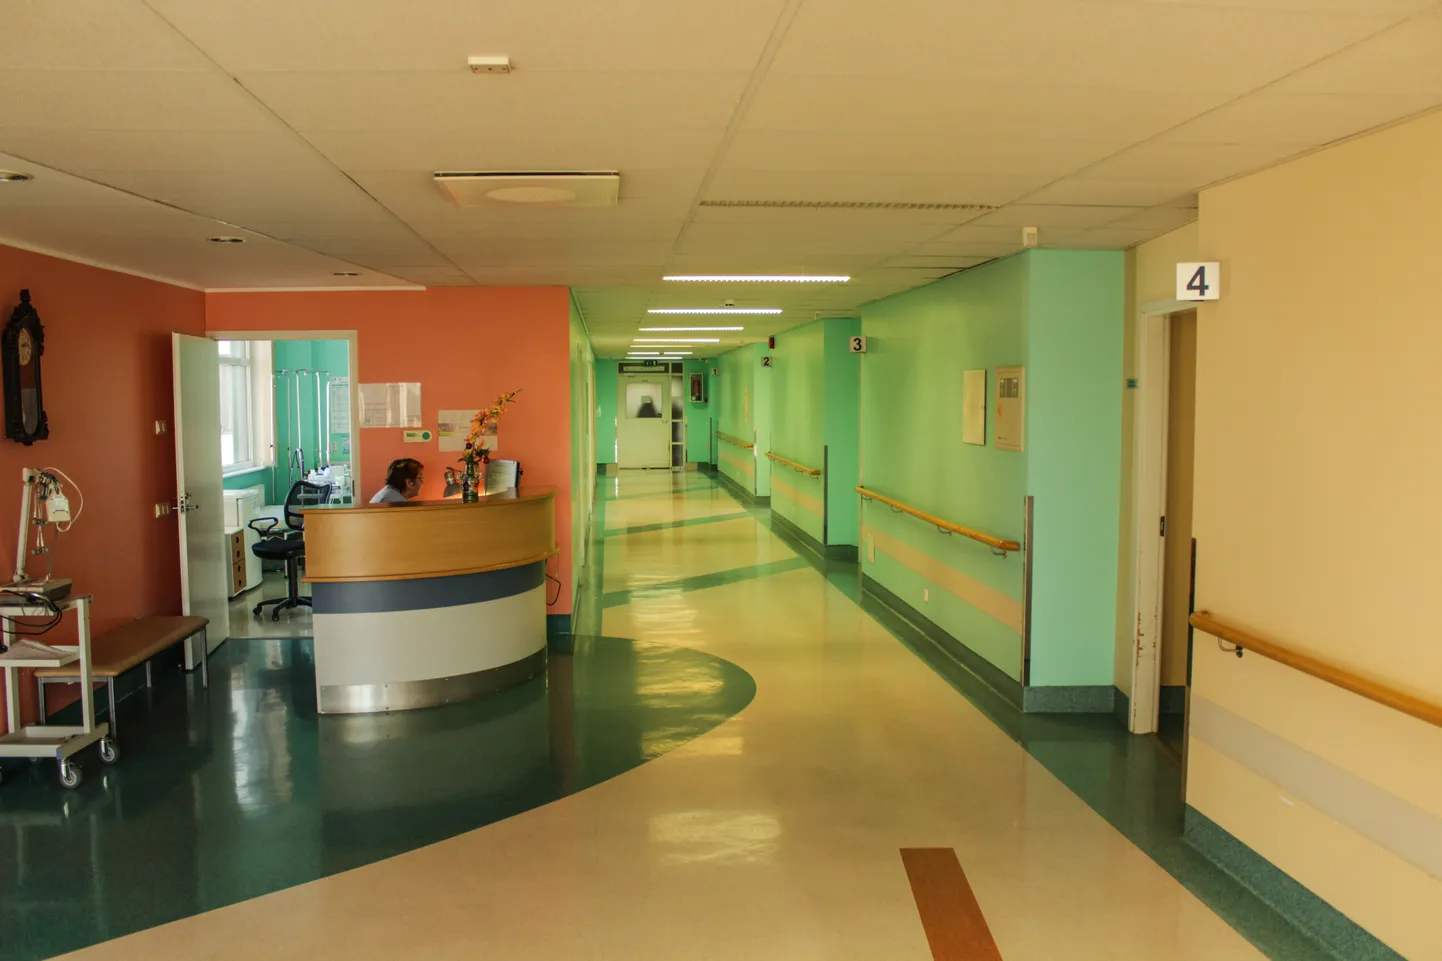 Valga haigla kolmandal korrusel asuva siseosakonna koridor. Ägestunud patsient alustas oma rünnakut siseosakonnast, kus pääses välja isolaatorpalatist.